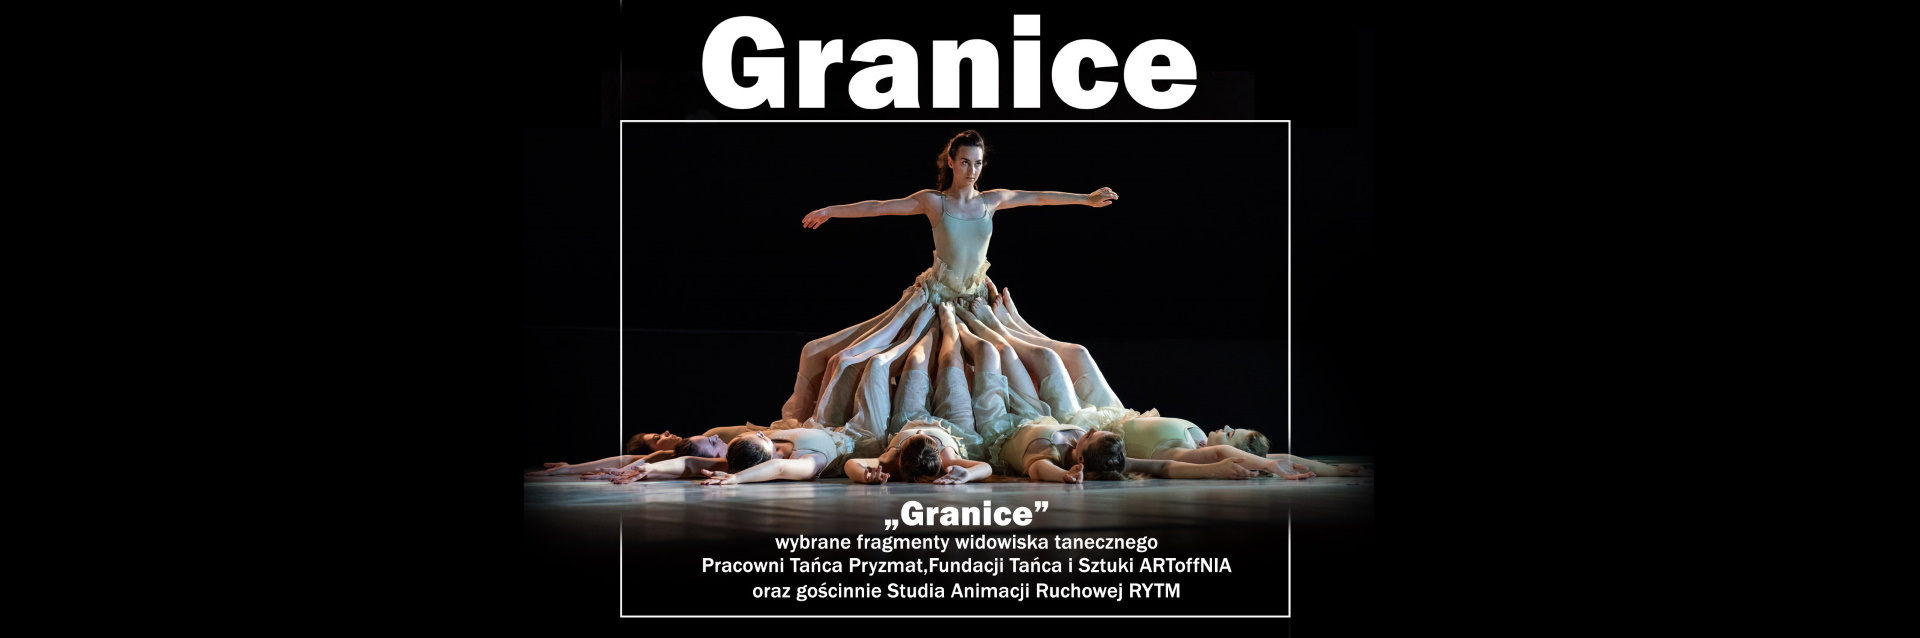 Plakat zapraszający w niedzielę 17 września 2023 r. do Olsztyna na widowisko taneczno-muzyczne GRANICE Filharmonia Olsztyn 2023.